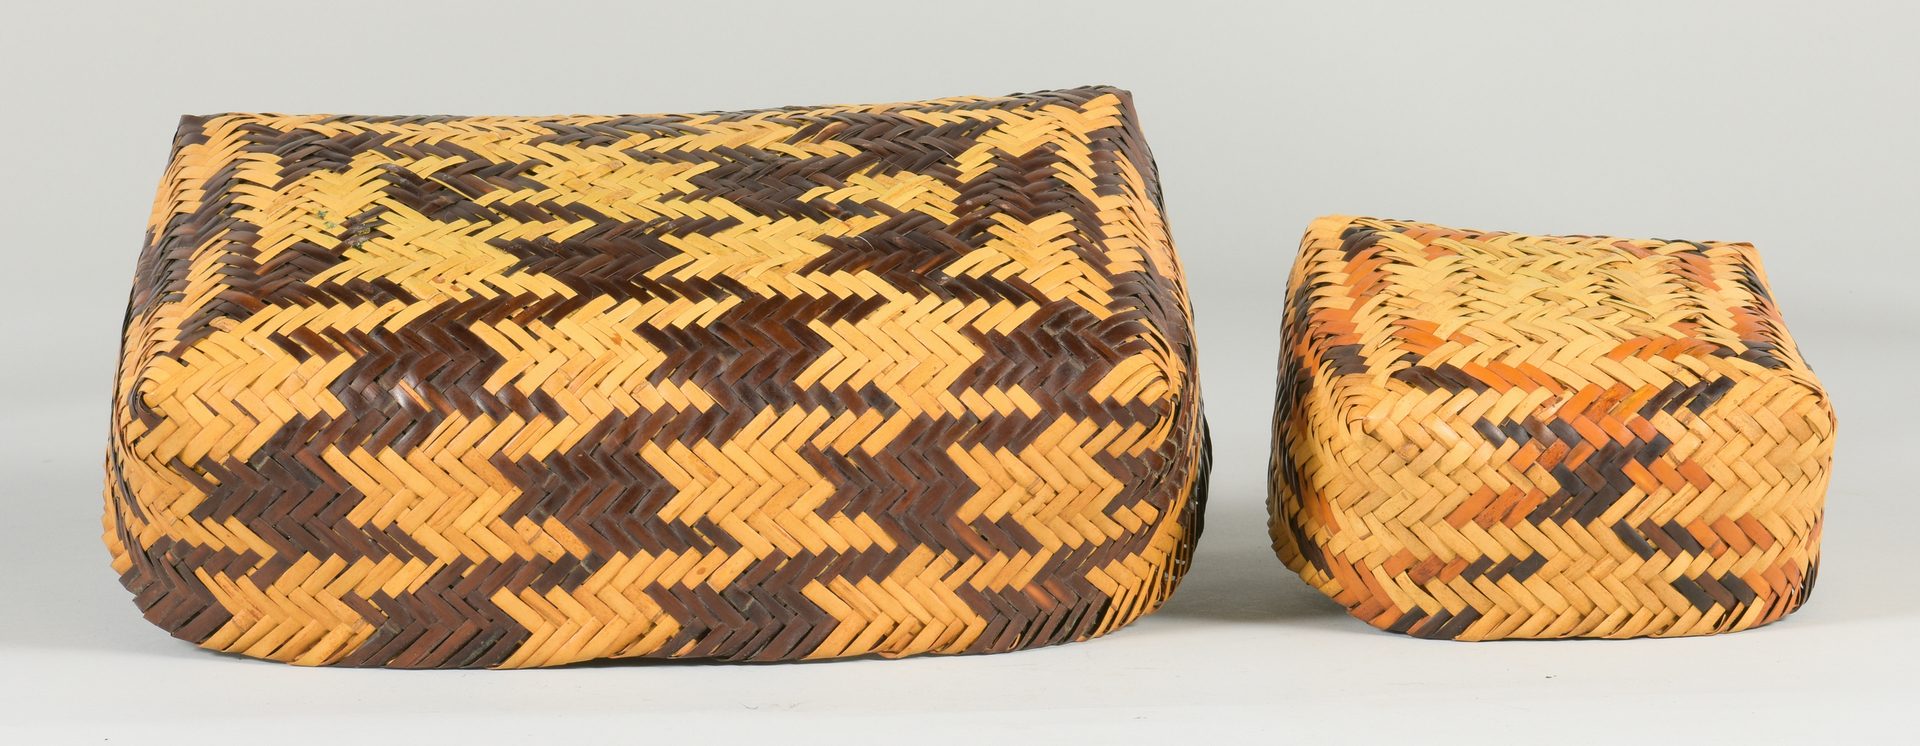 Lot 508: 2 Cherokee Double Weave Rivercane Baskets